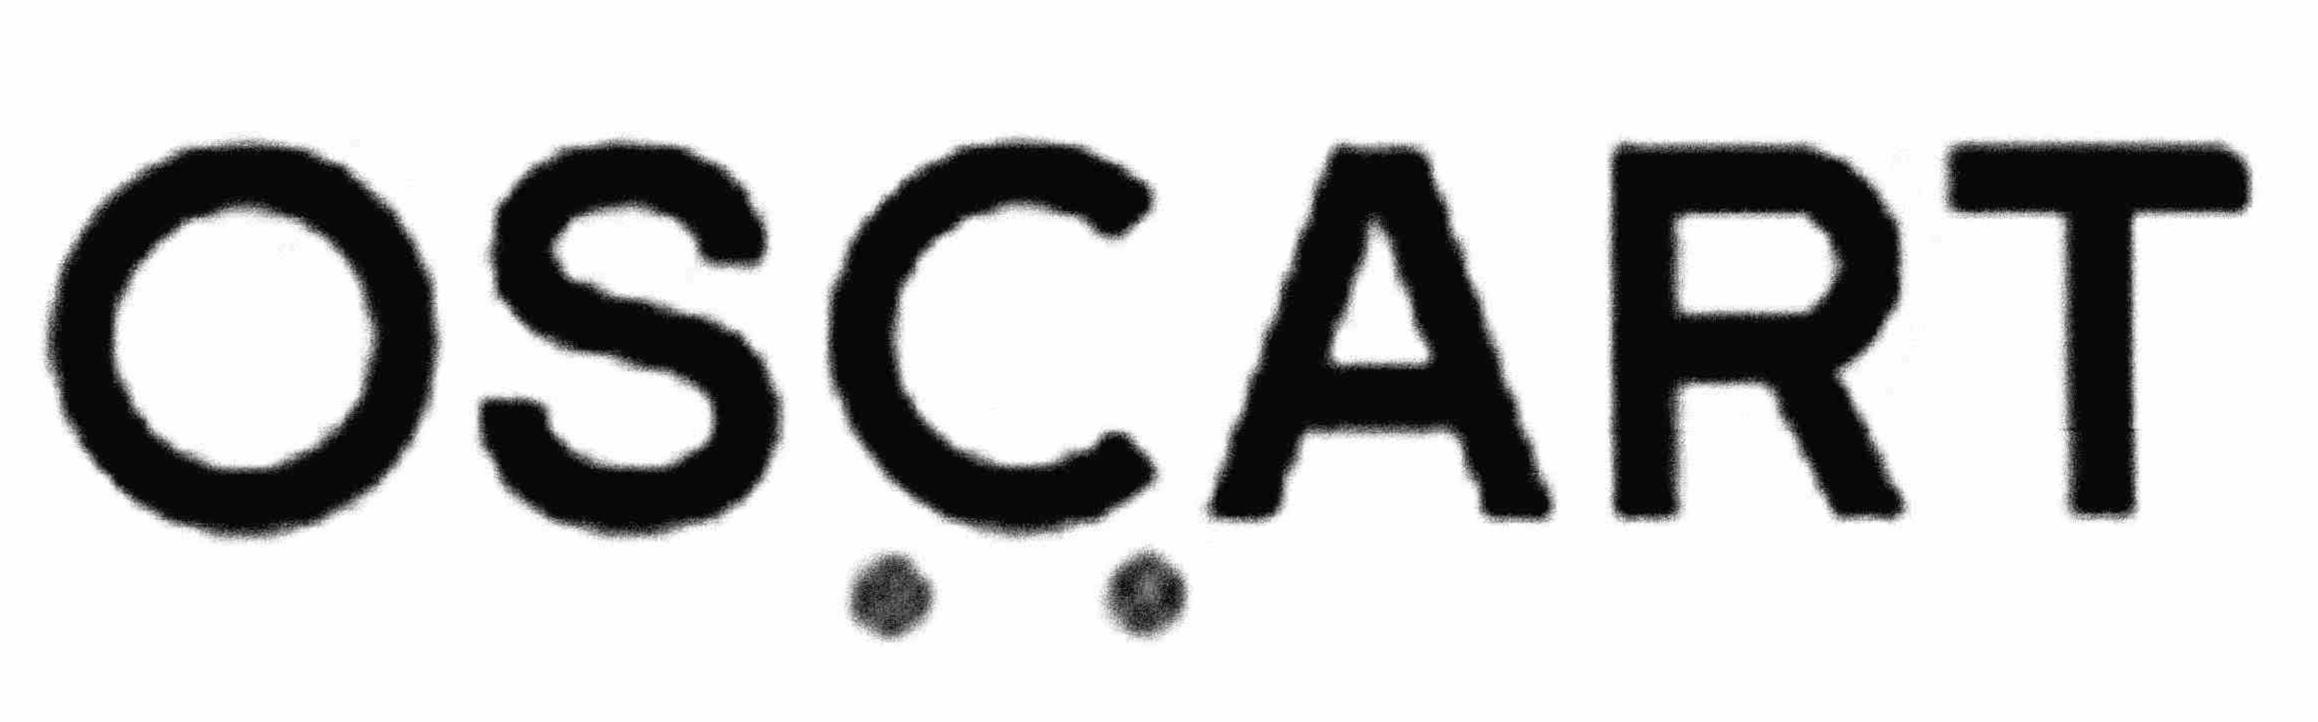 Trademark Logo OSCART